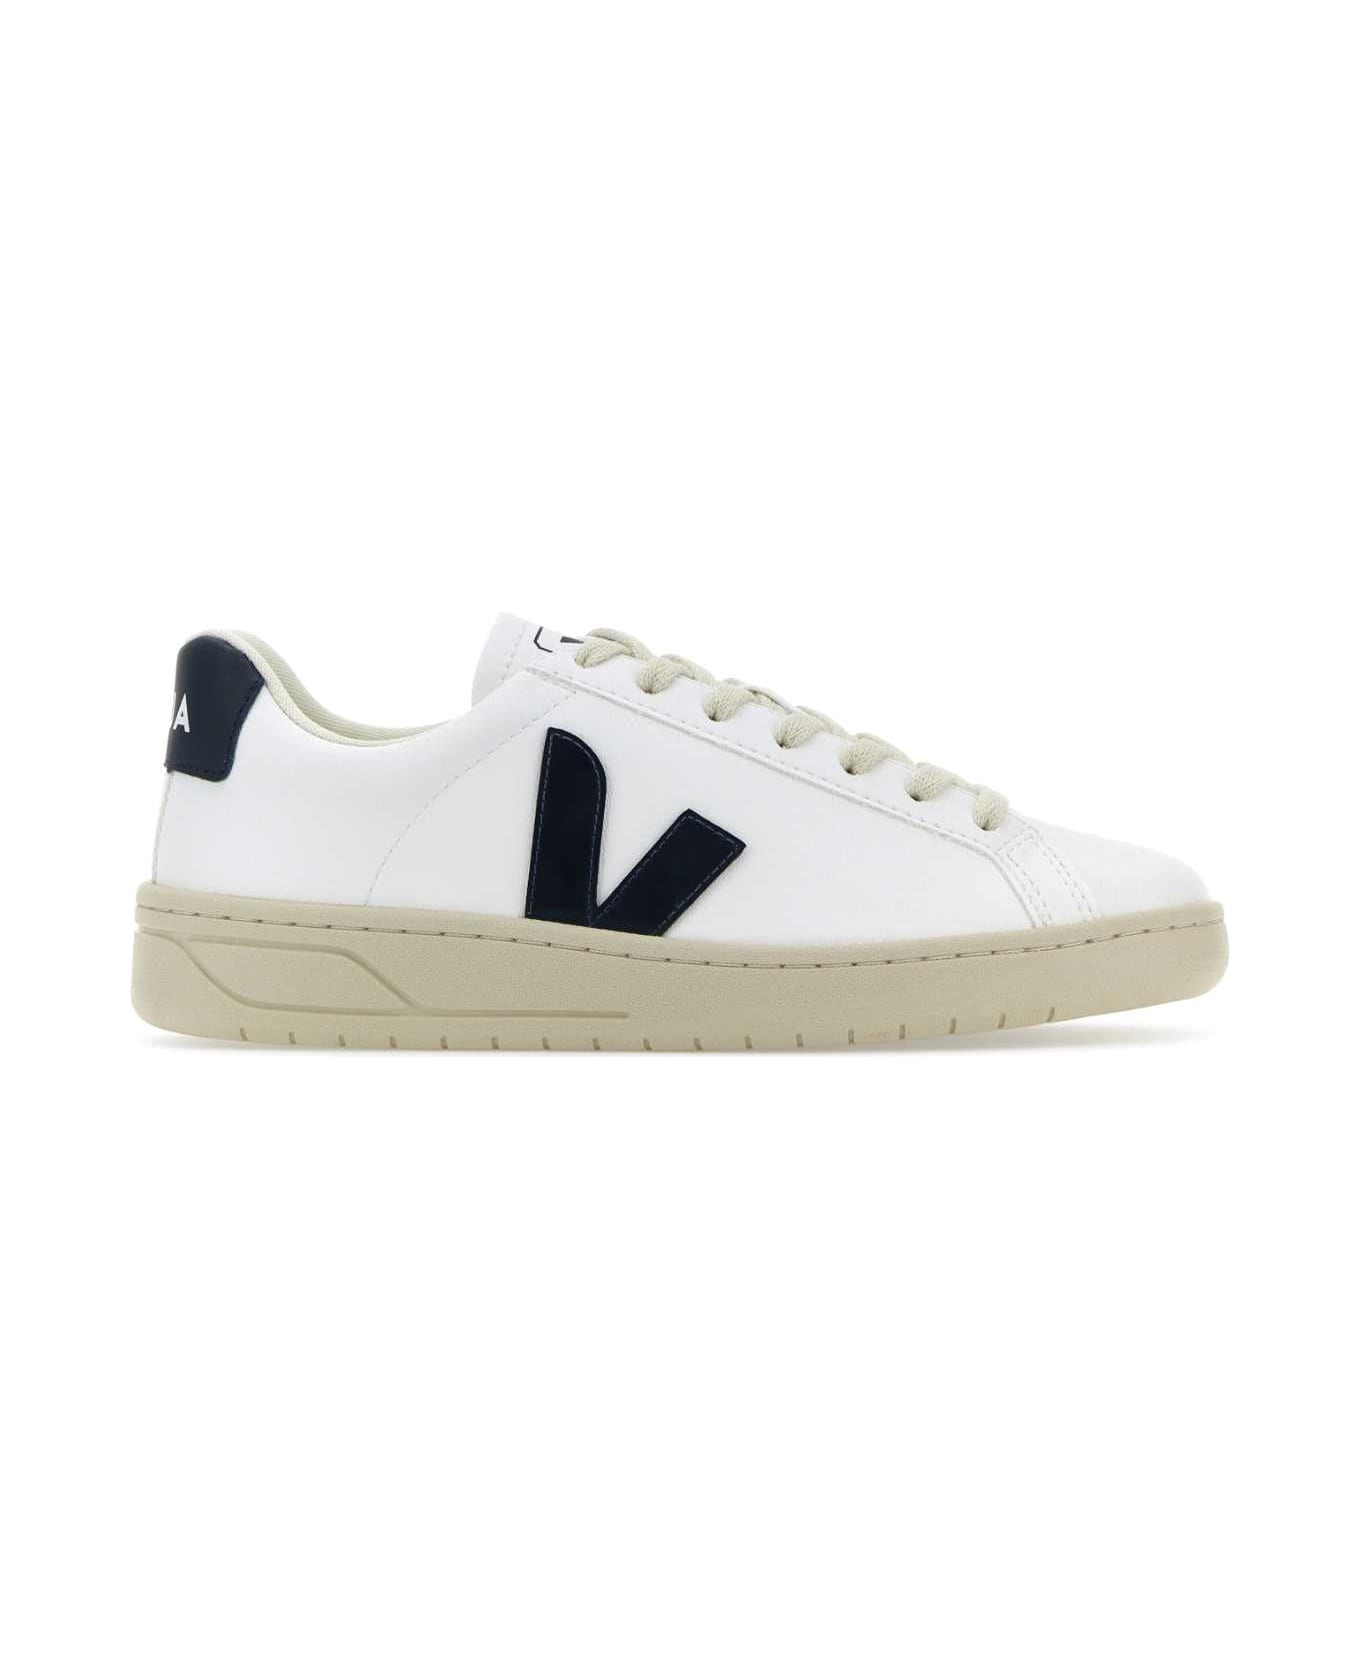 Veja White Synthetic Leather Urca Sneakers - WHITENAUTICO